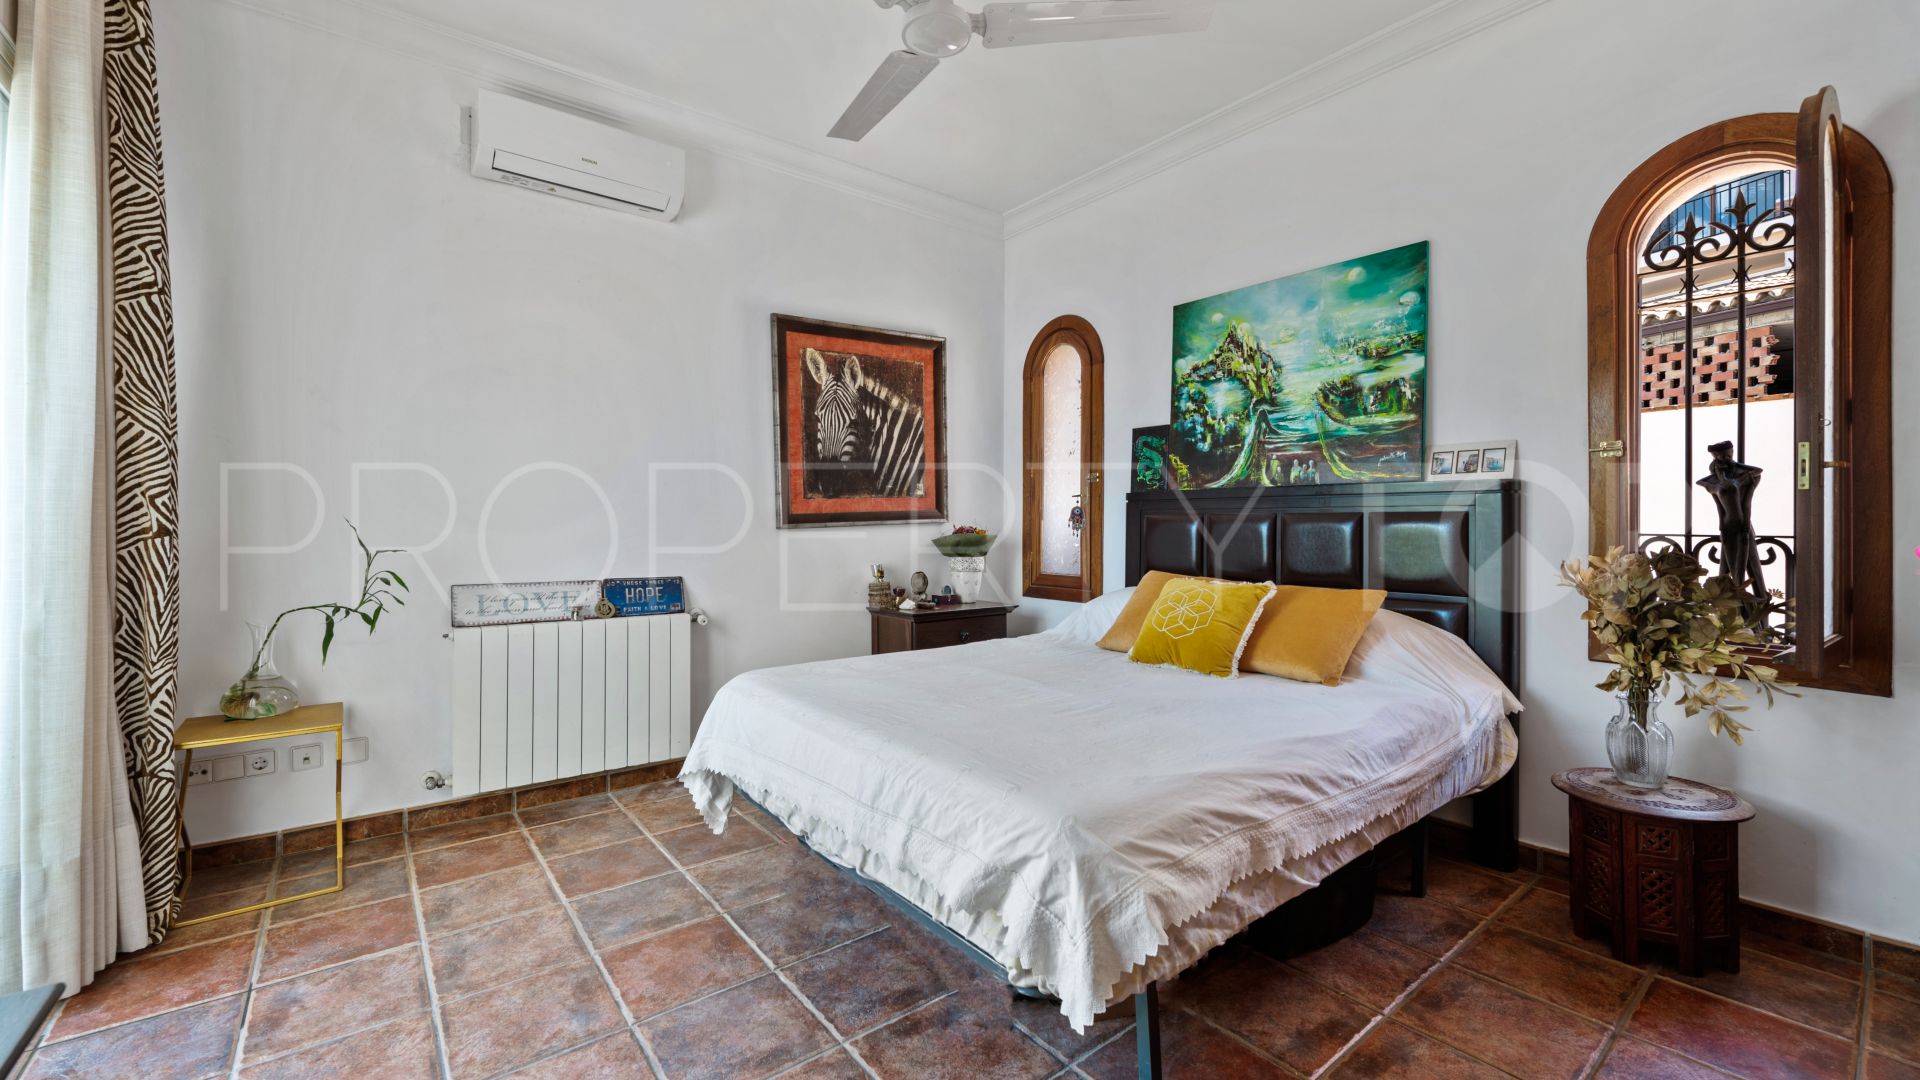 4 bedrooms Istan villa for sale